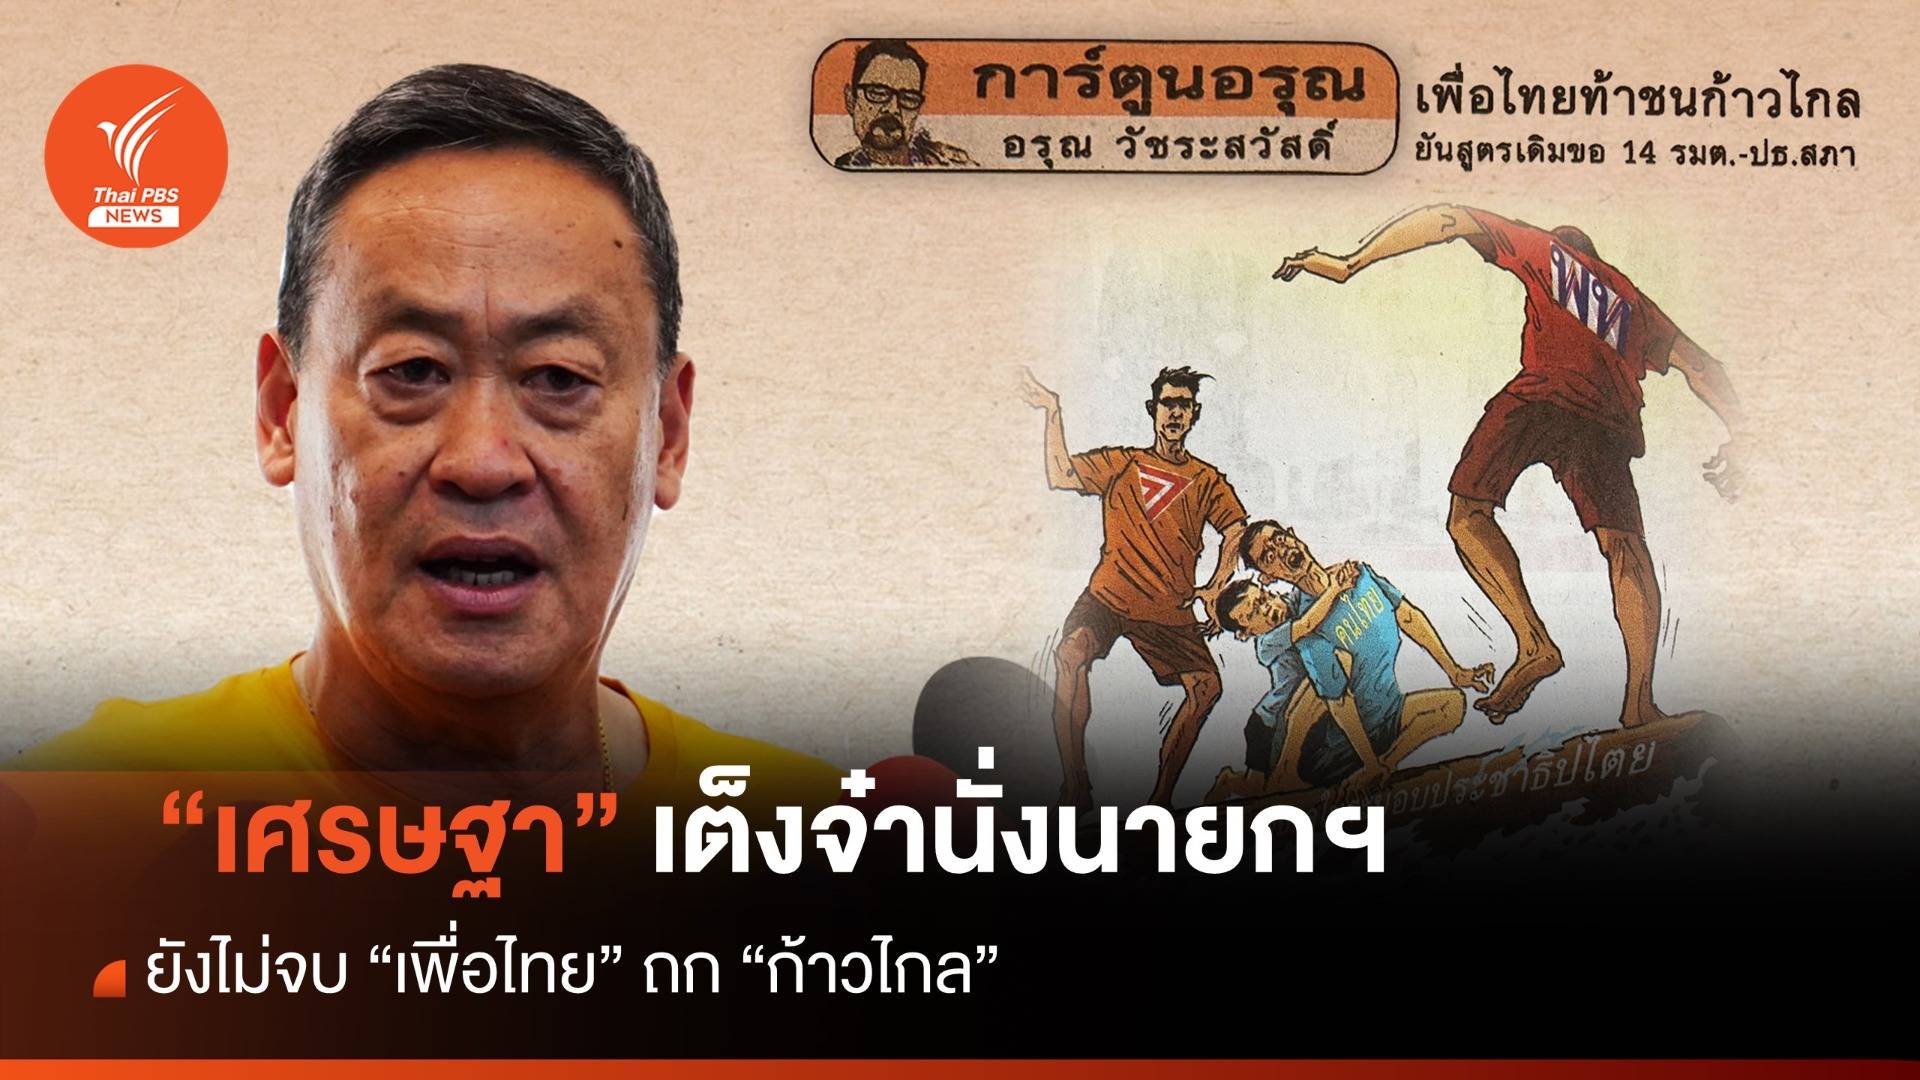 ประจักษ์จับประเด็น : ท้า “เพื่อไทย” เปิดตัวประธานสภาผู้แทนฯ